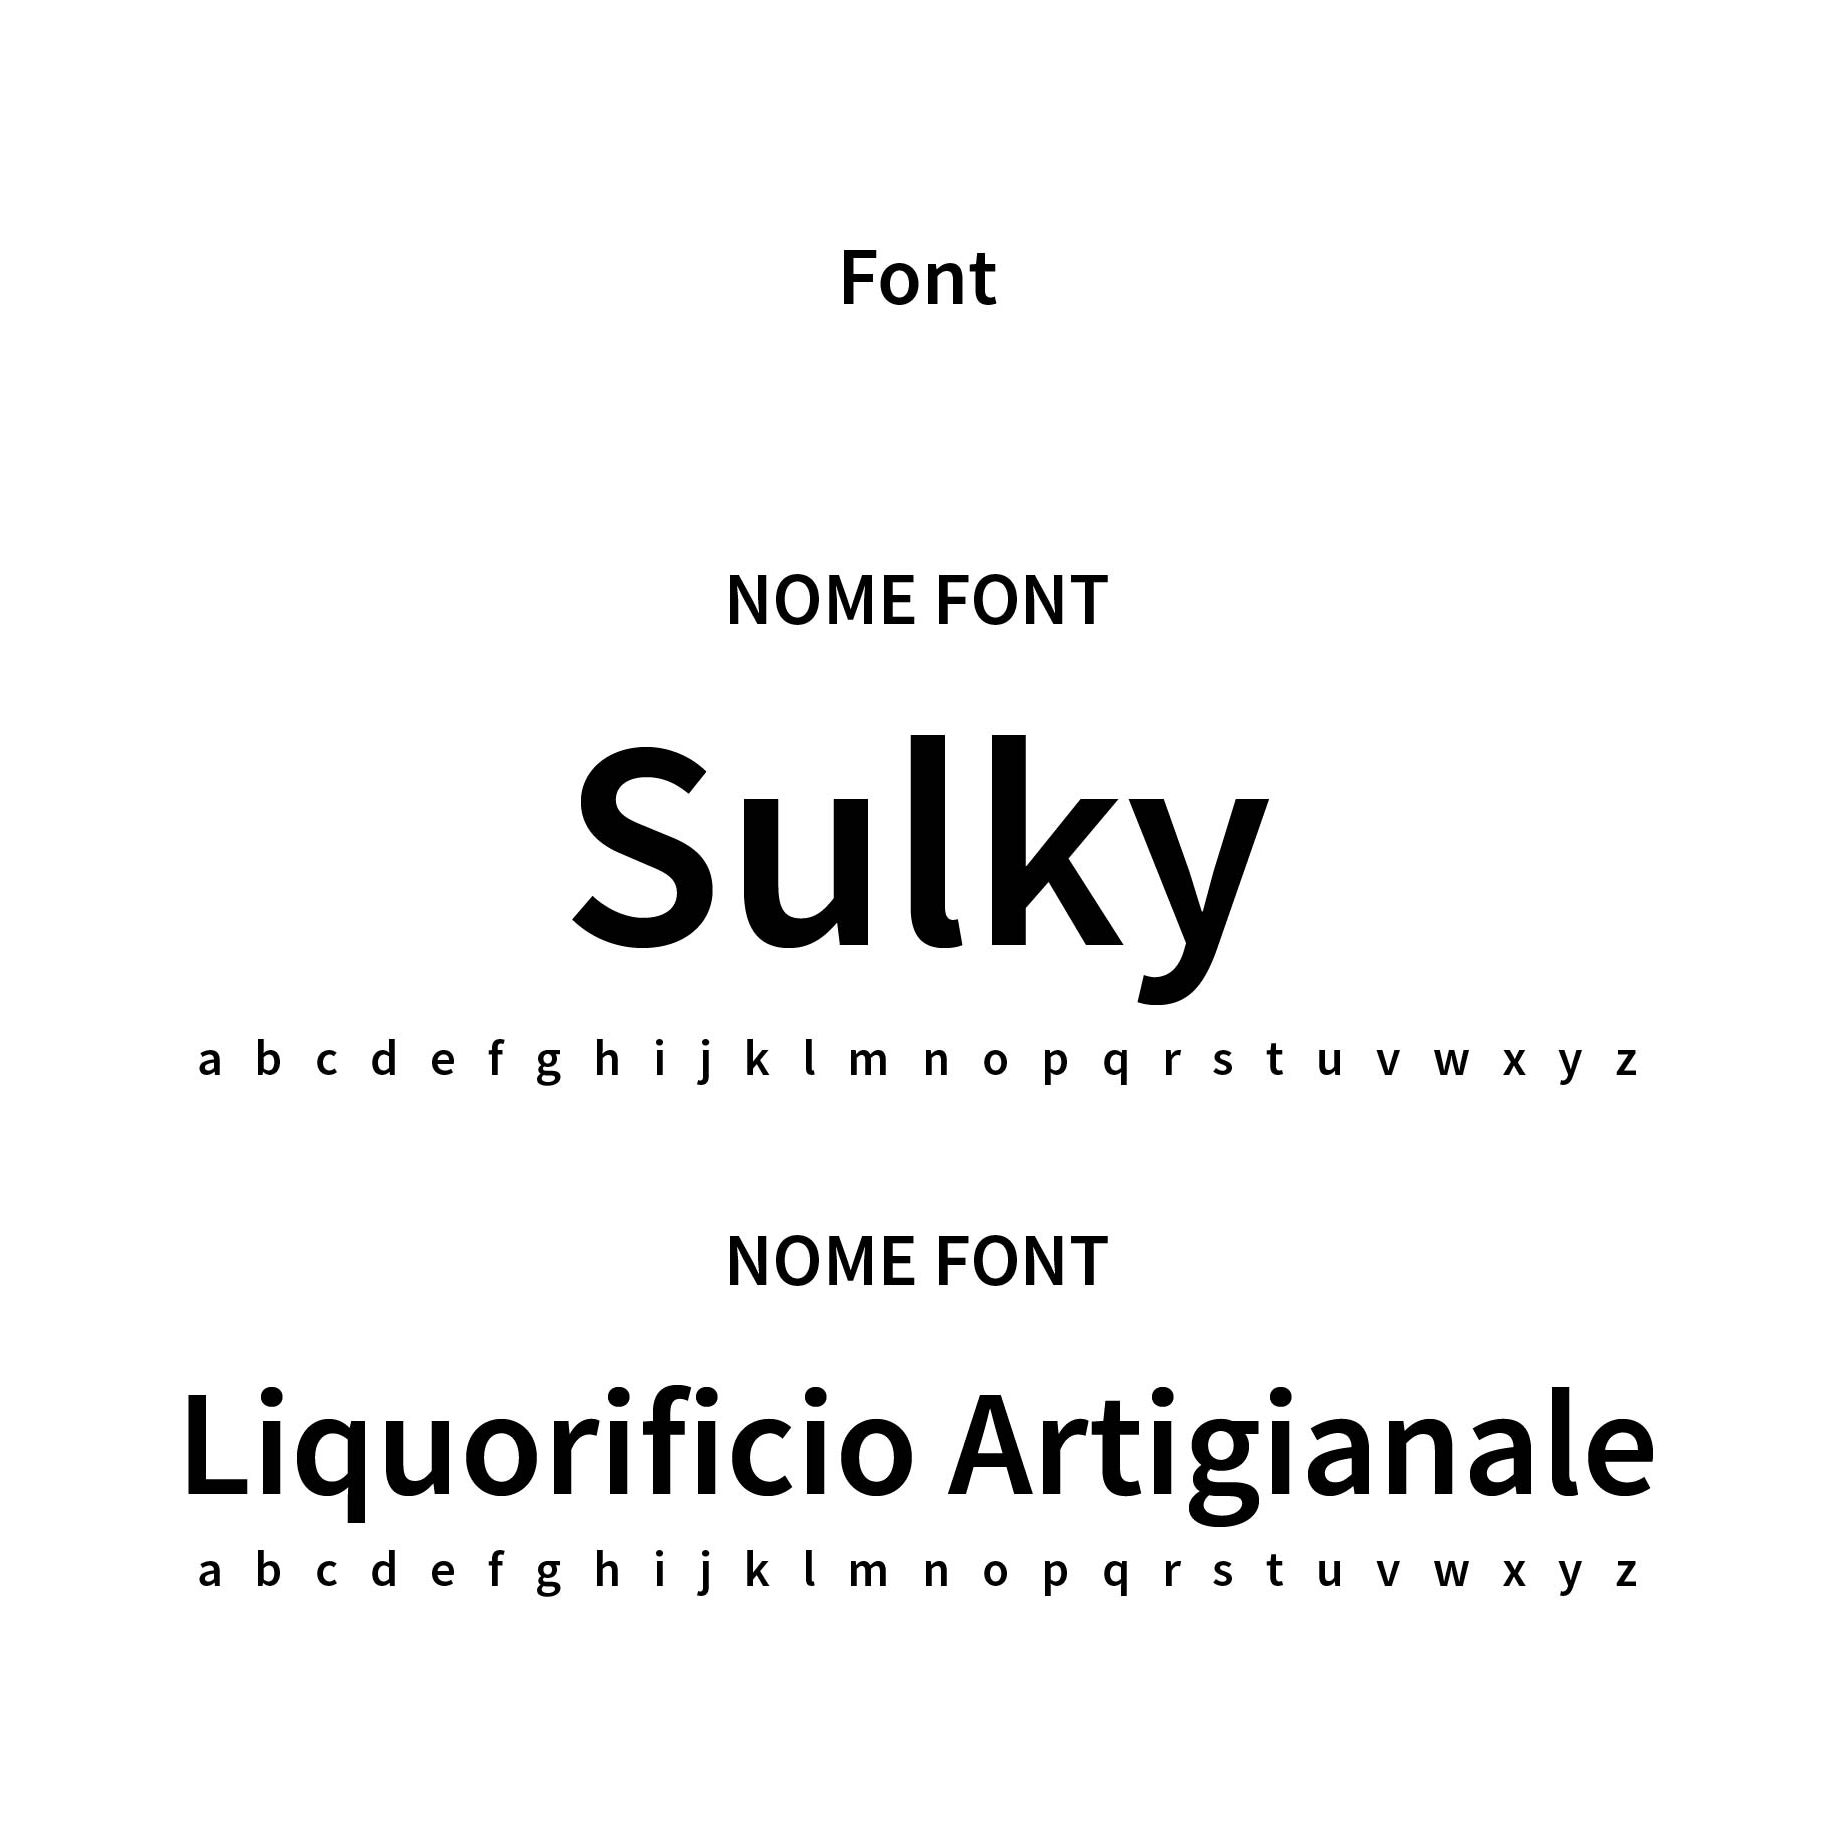 Font utilizzati per realizzare la brand identity del liquorificio artigianale Sulki